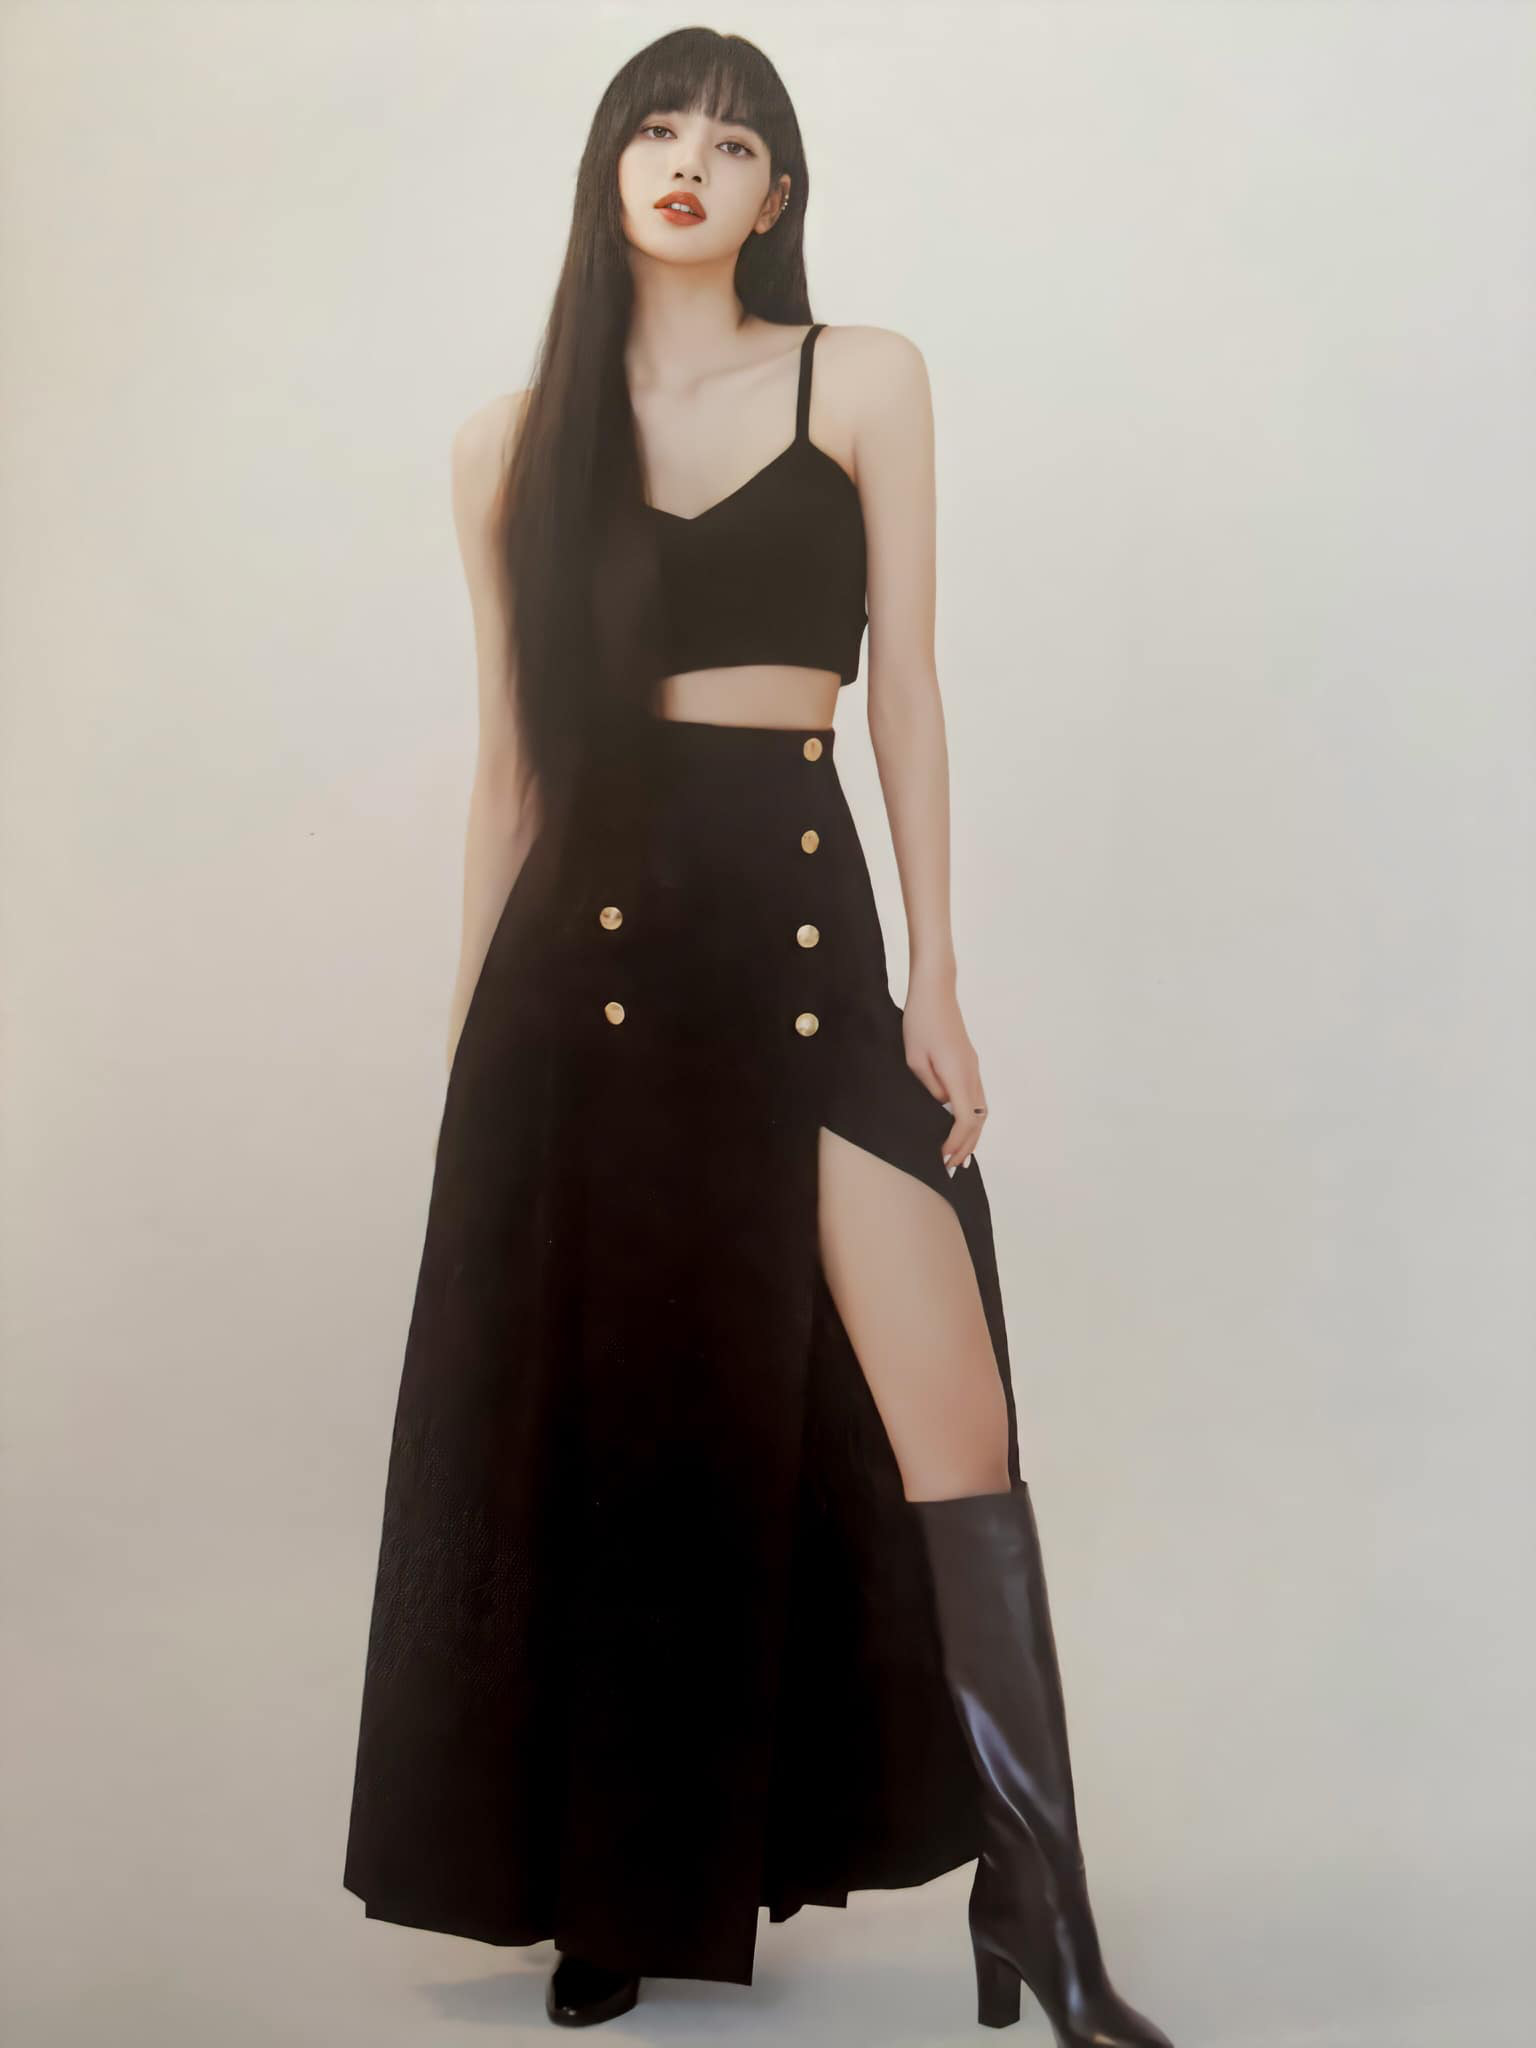 Đẳng cấp đại sứ toàn cầu của Lisa: Diện váy Celine kín bưng mà vẫn tạo dáng tài tình nên sexy hơn hẳn người mẫu hãng - Ảnh 3.